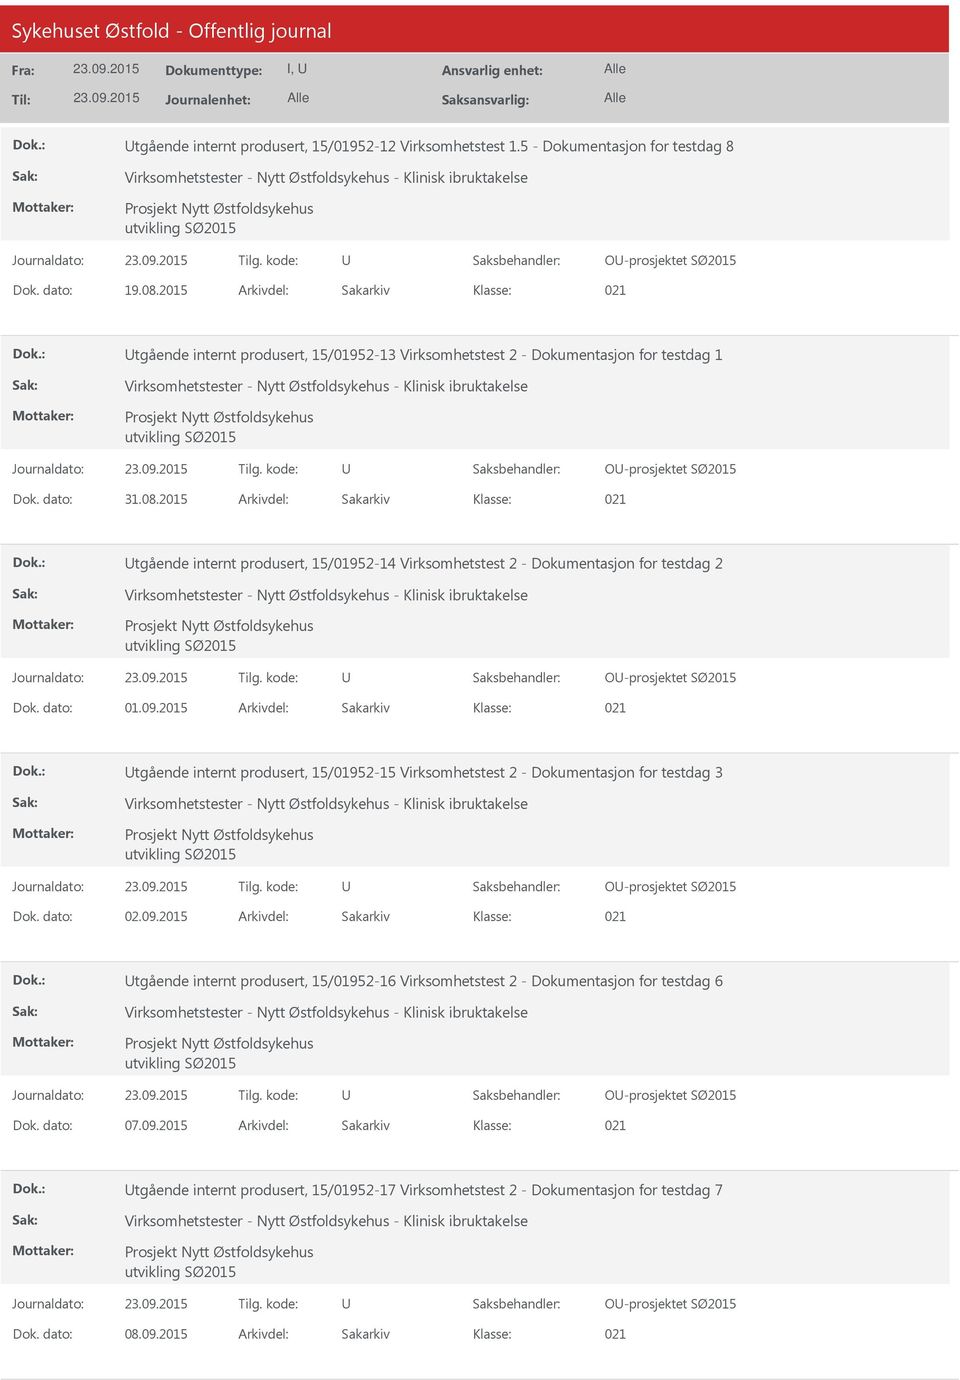 2015 Arkivdel: Sakarkiv tgående internt produsert, 15/01952-14 Virksomhetstest 2 - Dokumentasjon for testdag 2 O-prosjektet SØ2015 Dok. dato: 01.09.